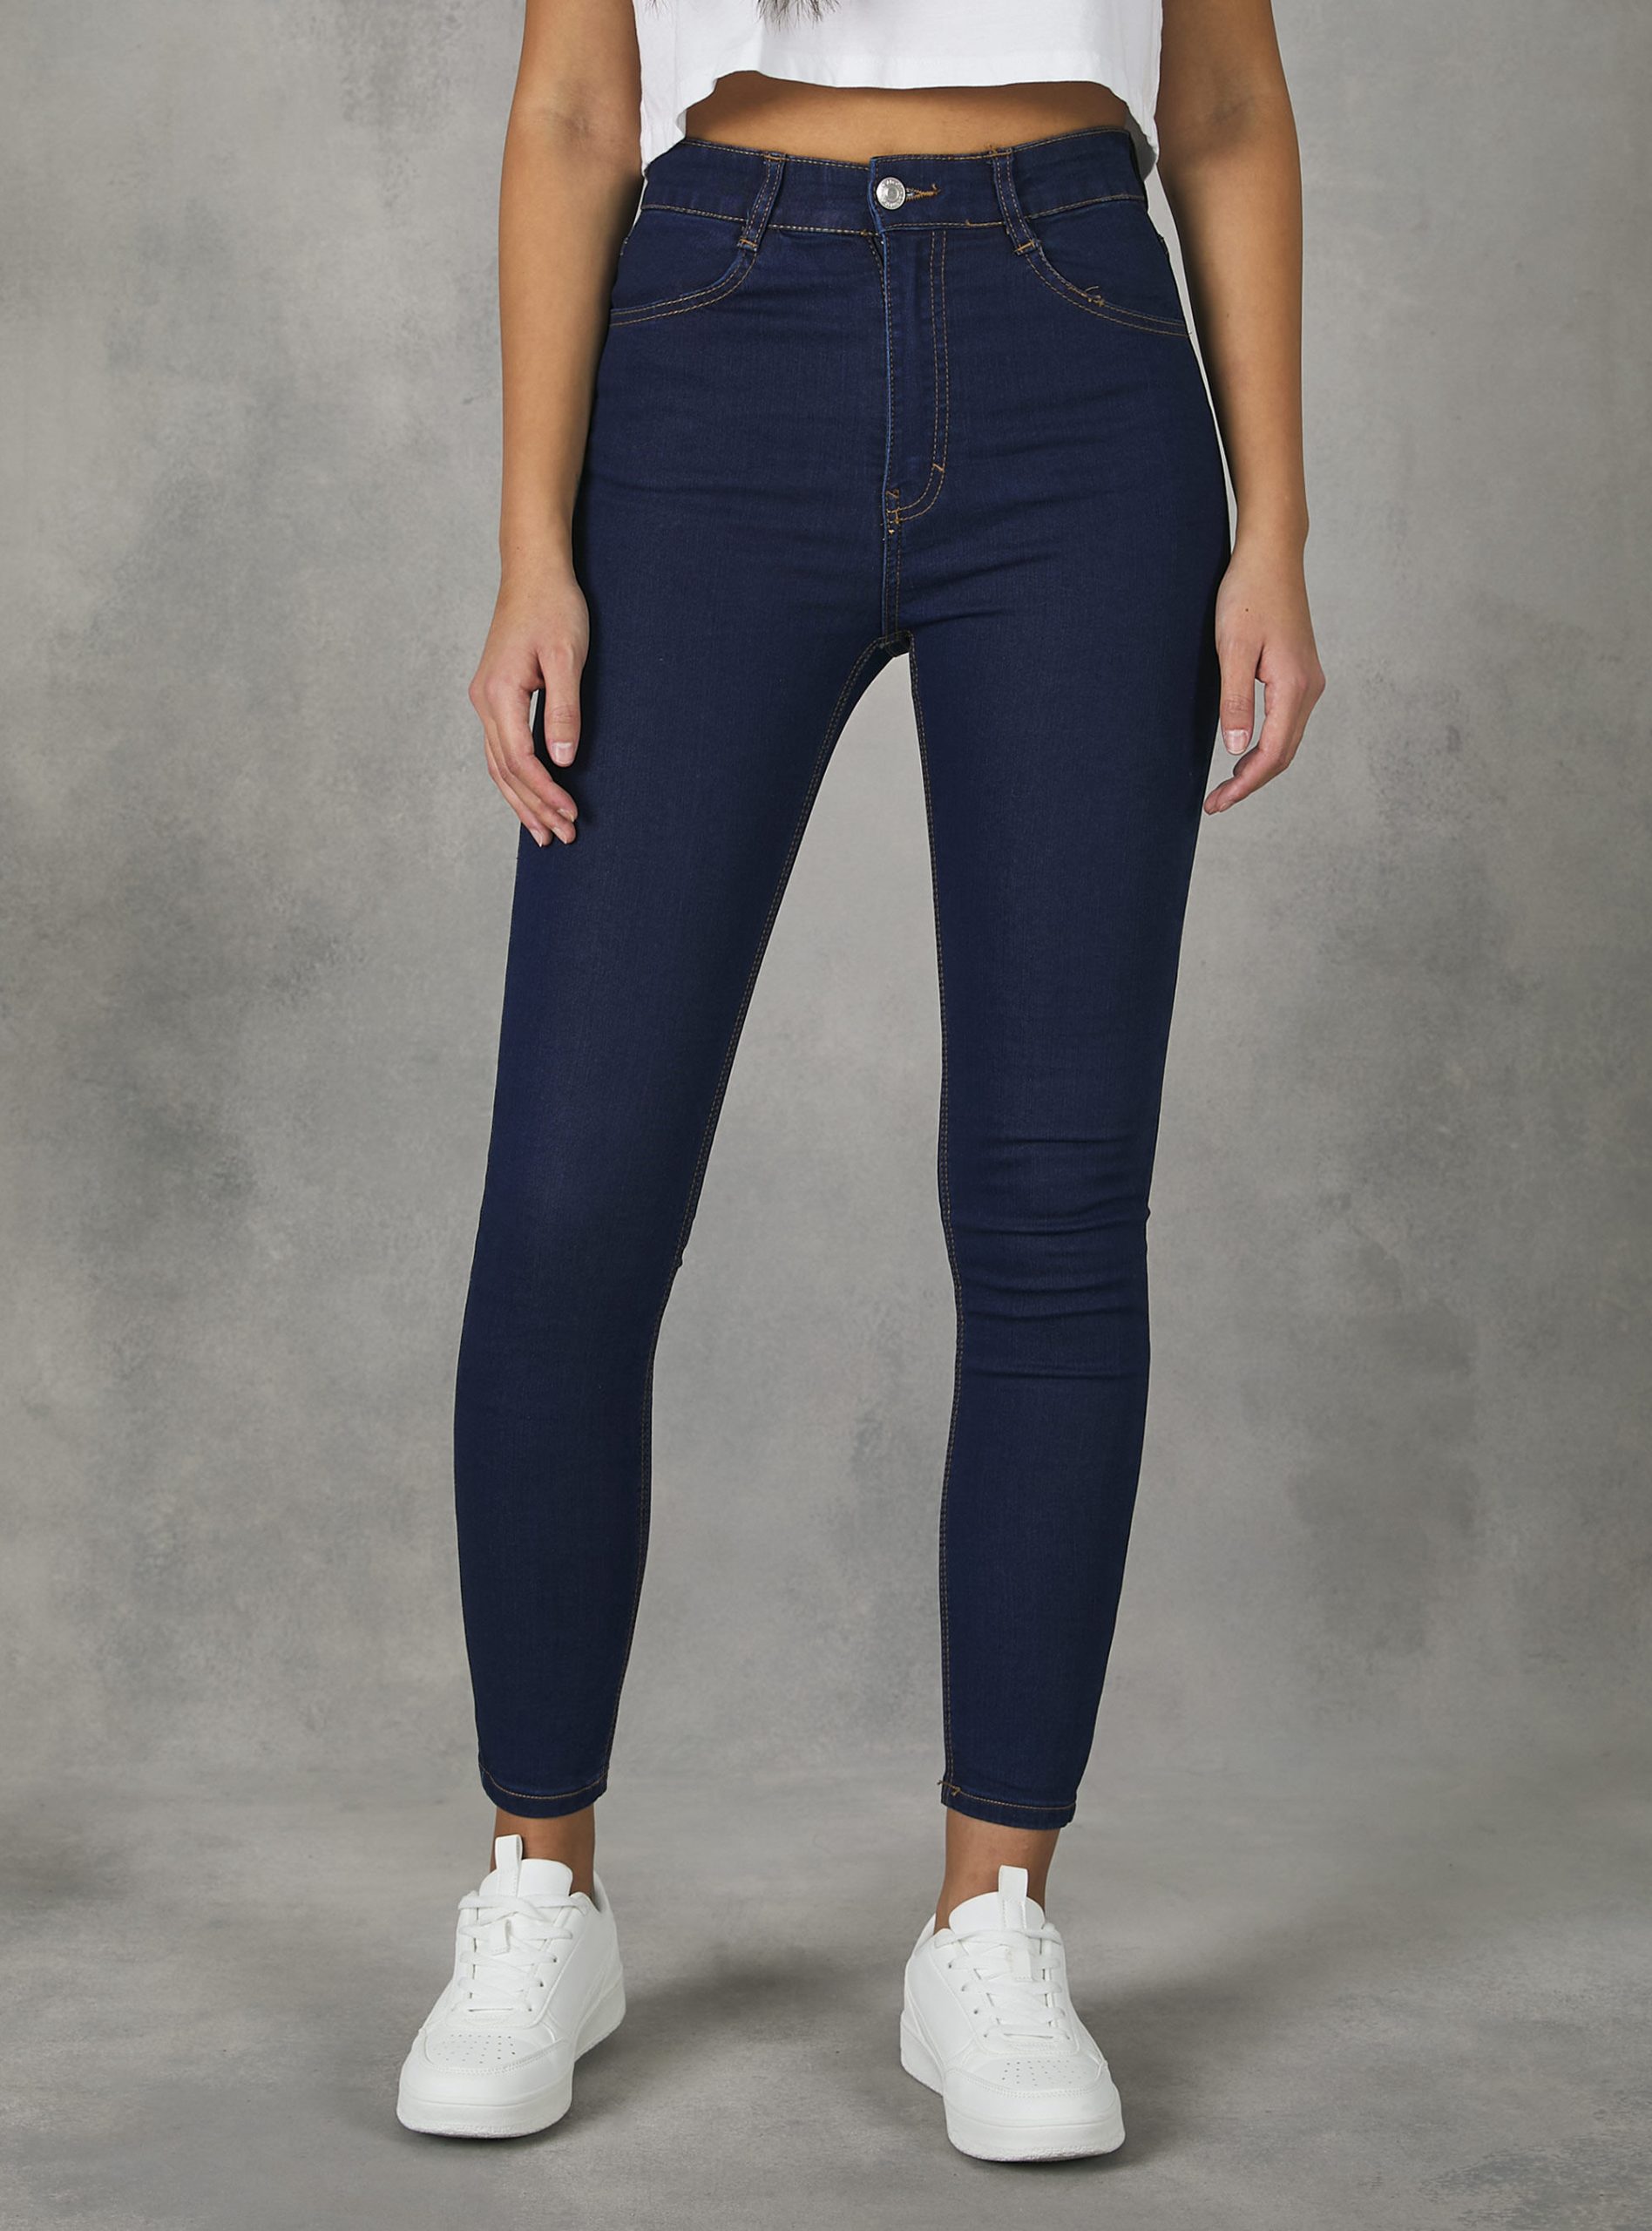 Jeans D002 Medium Dark Blue Frauen Alcott Skinny Fit Jeans Mit Hoher Taille Reduzierter Preis – 2